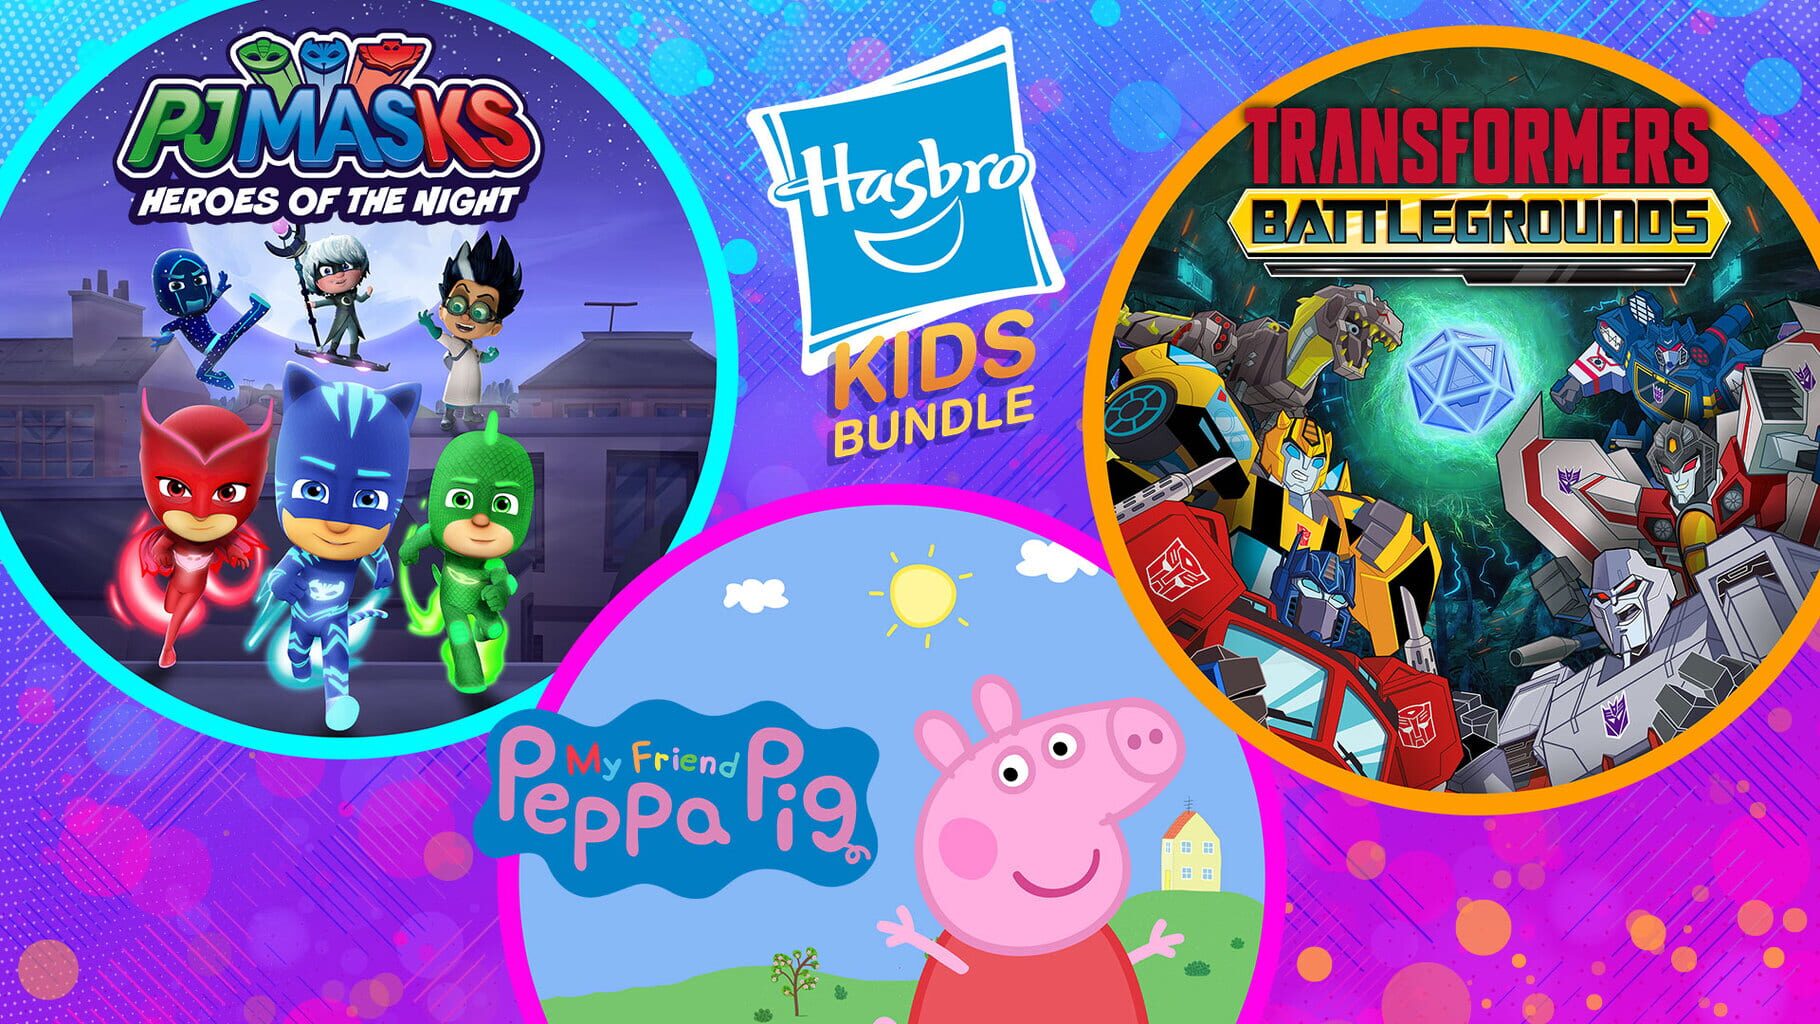 Hasbro Kids Bundle Image